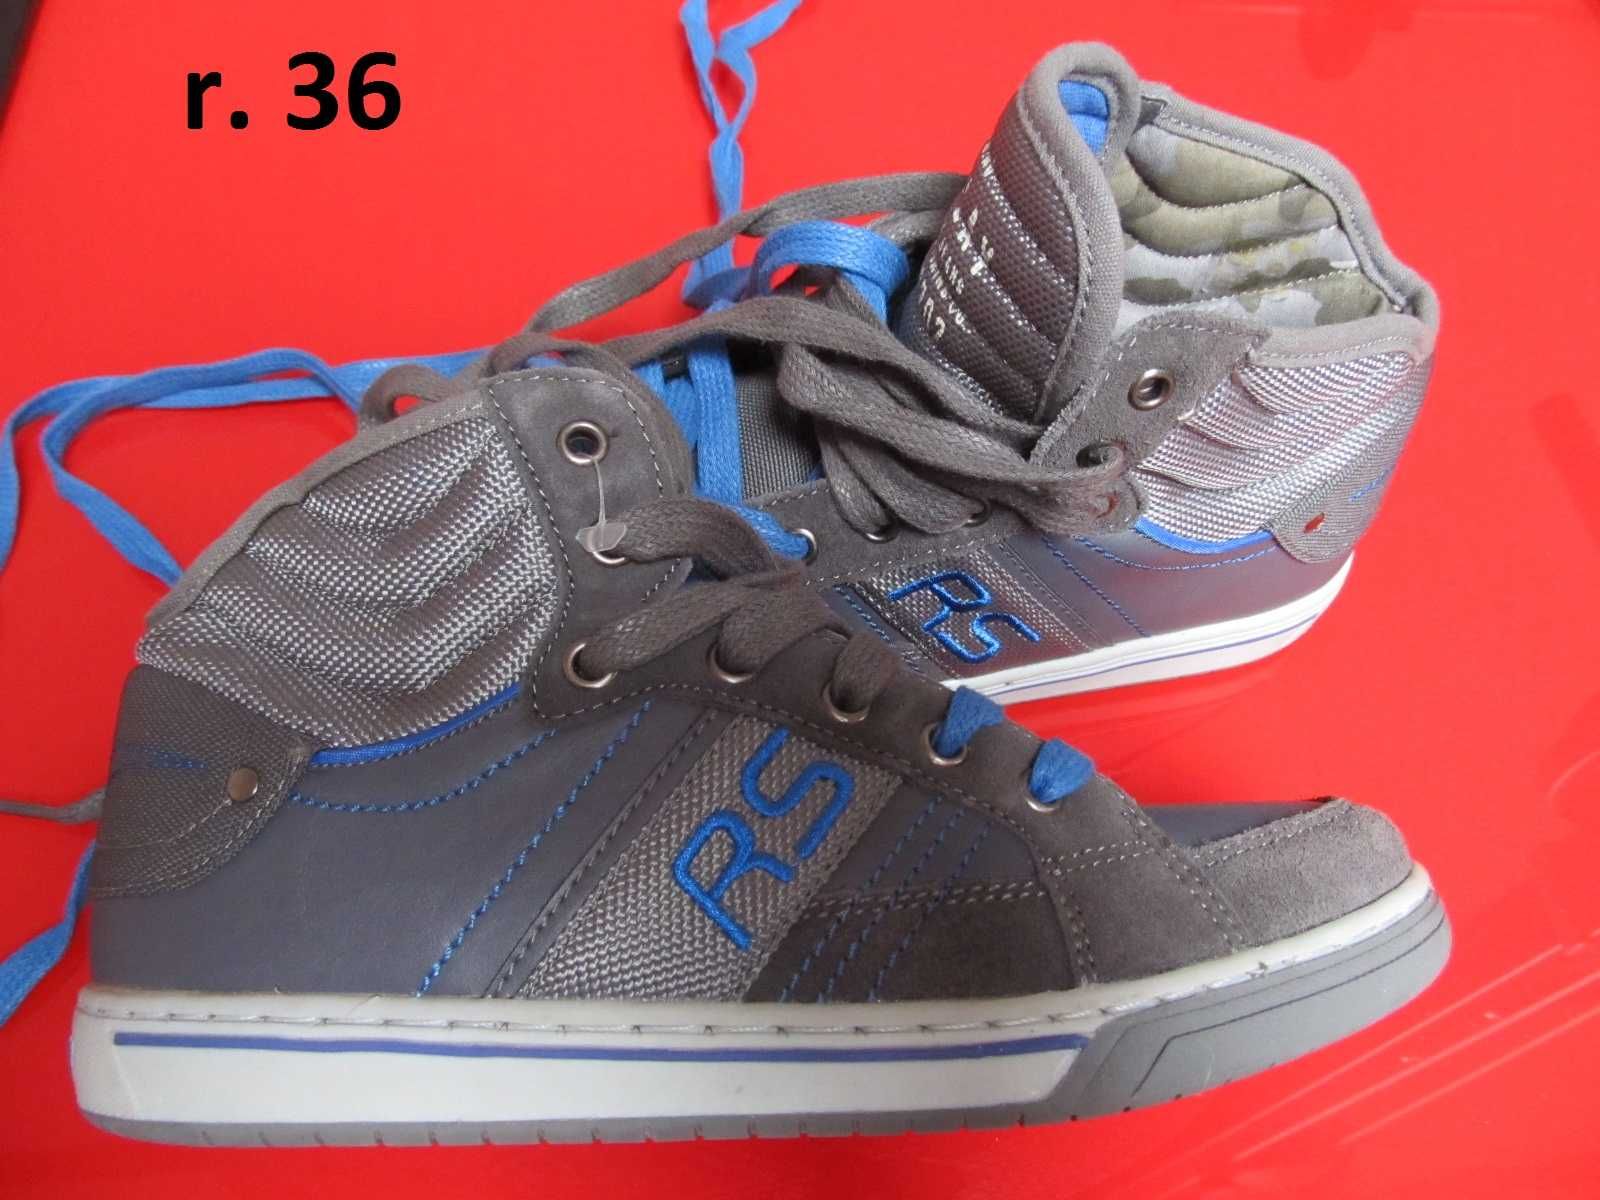 r.36 nowe REPLAY Blue Jeans trampki 22 - 23 cm skate sneakers